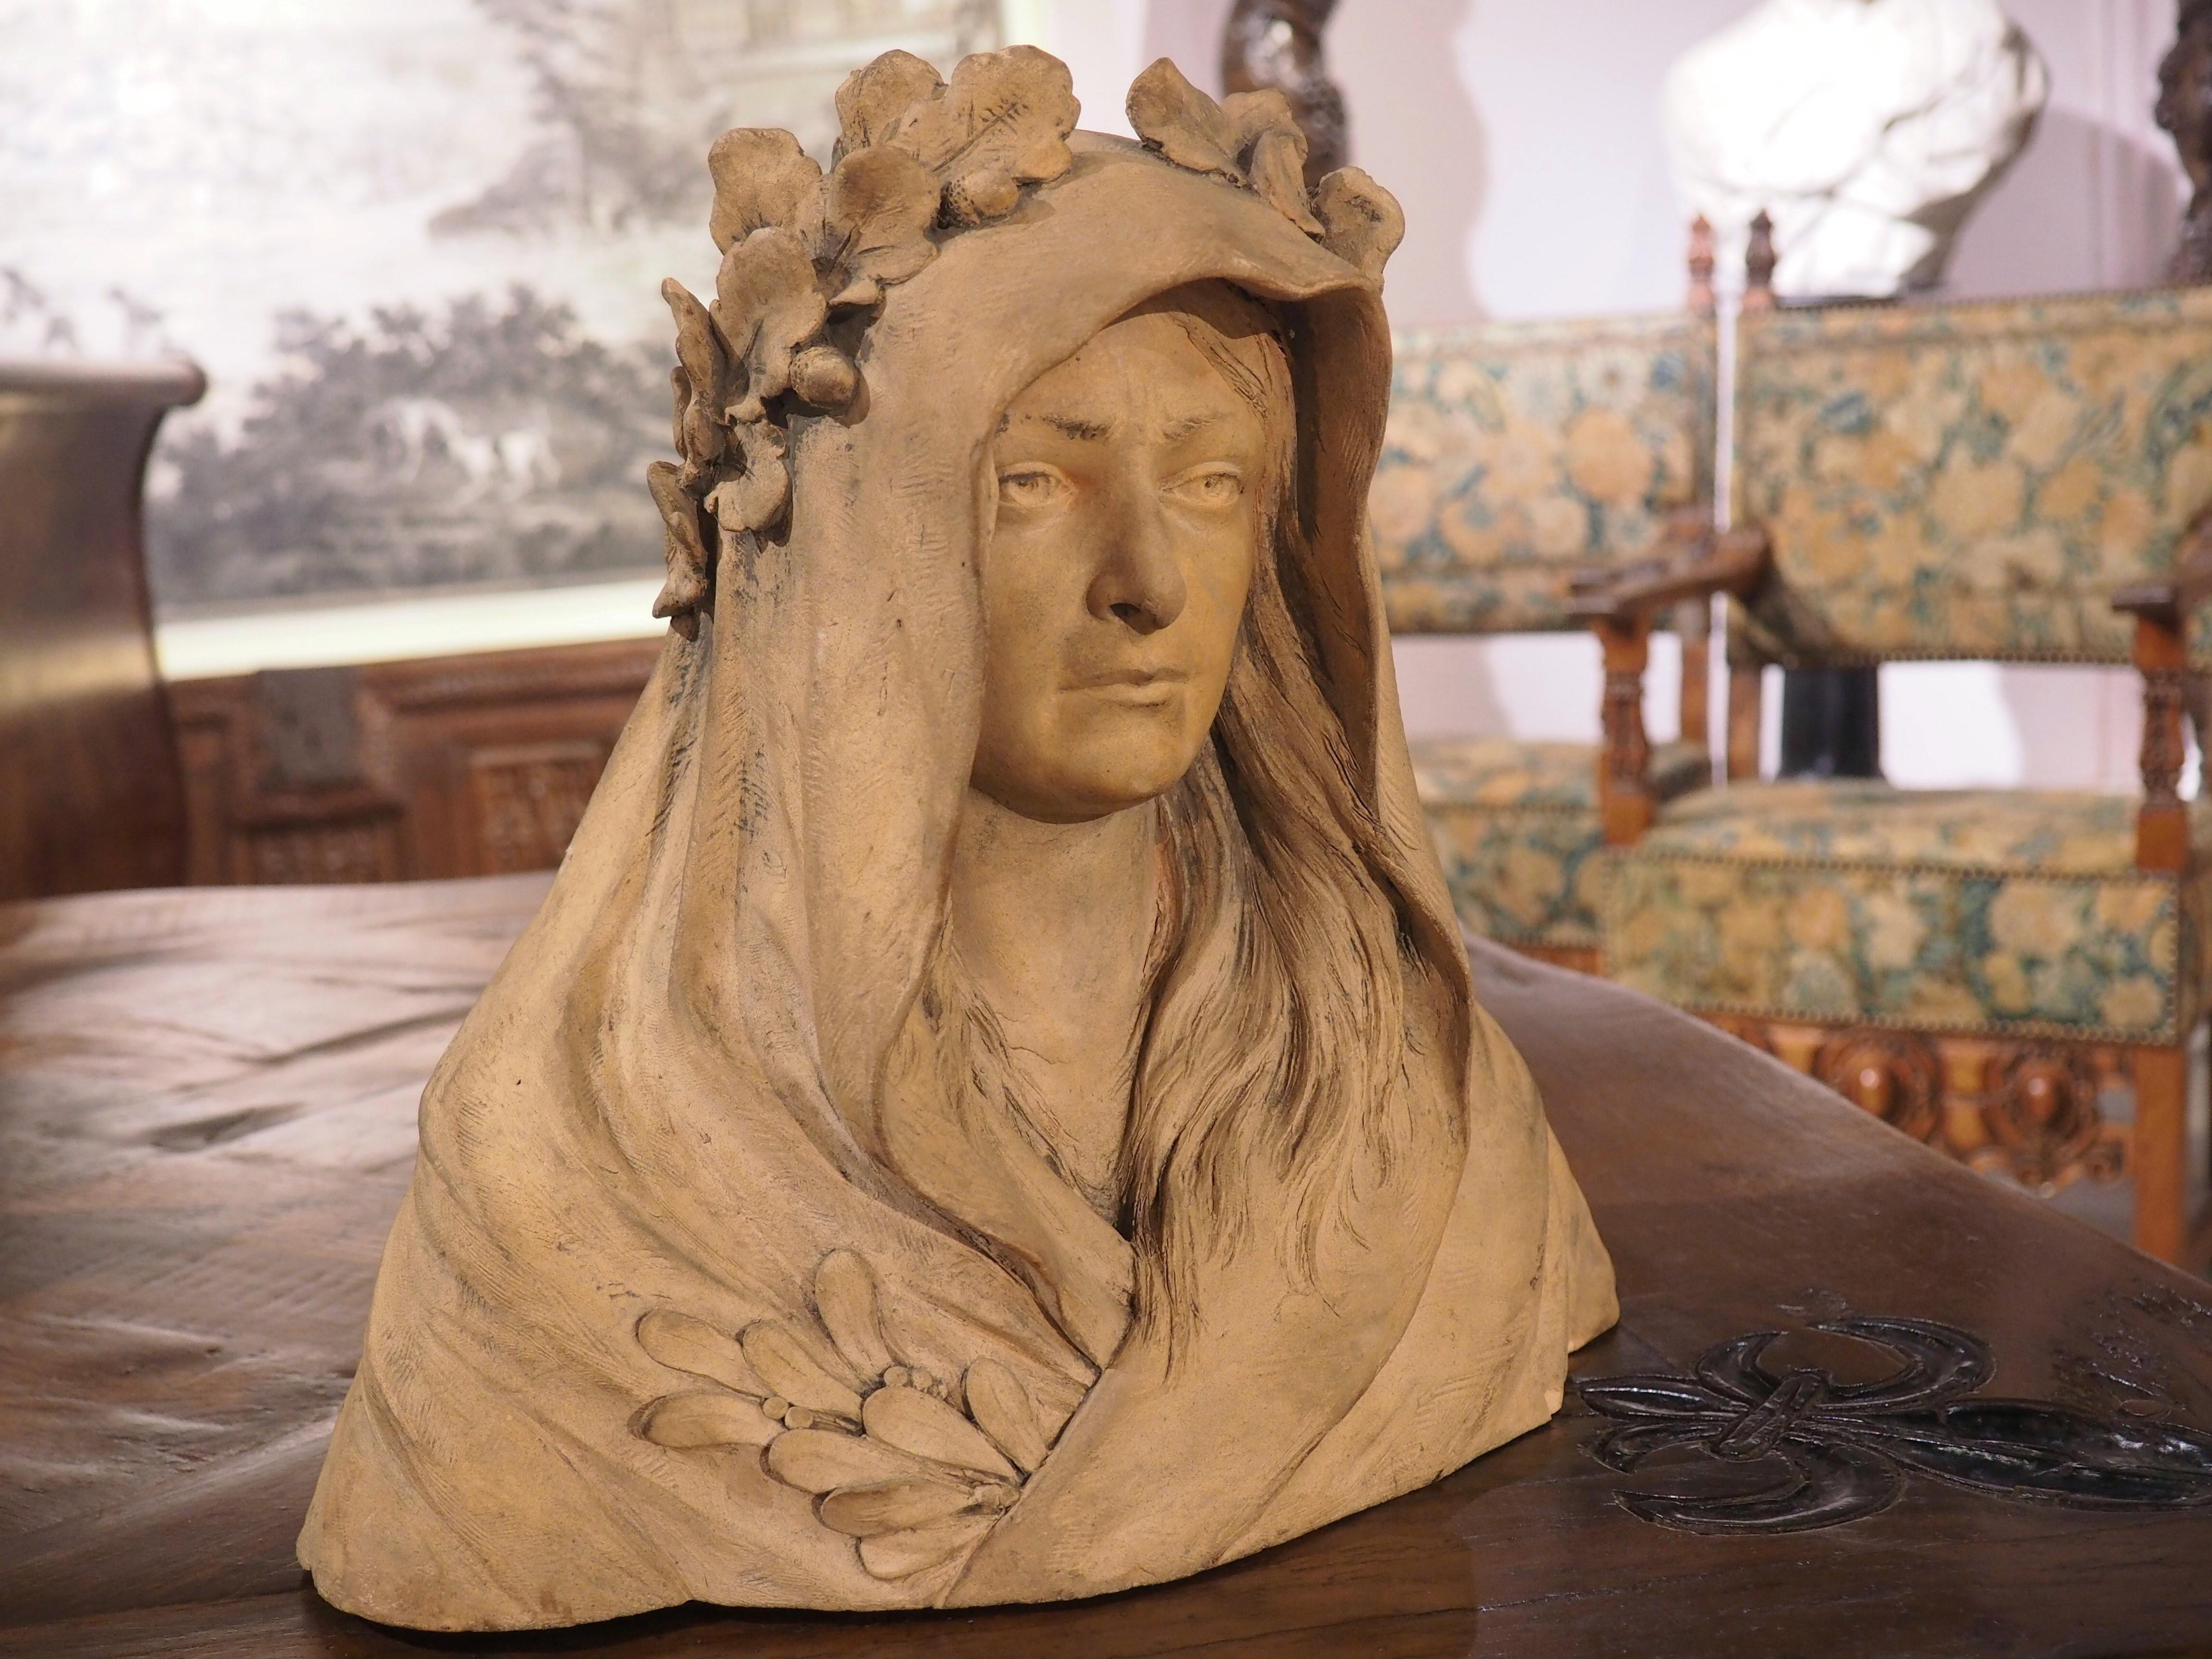 Diese Terrakotta-Büste einer Frau weist einige exquisite Details auf. Die Figur wurde Ende des 19. bis Anfang des 20. Jahrhunderts in Frankreich geschaffen und trägt langes, glattes Haar, das unter einer Kapuze hervorlugt, möglicherweise einem